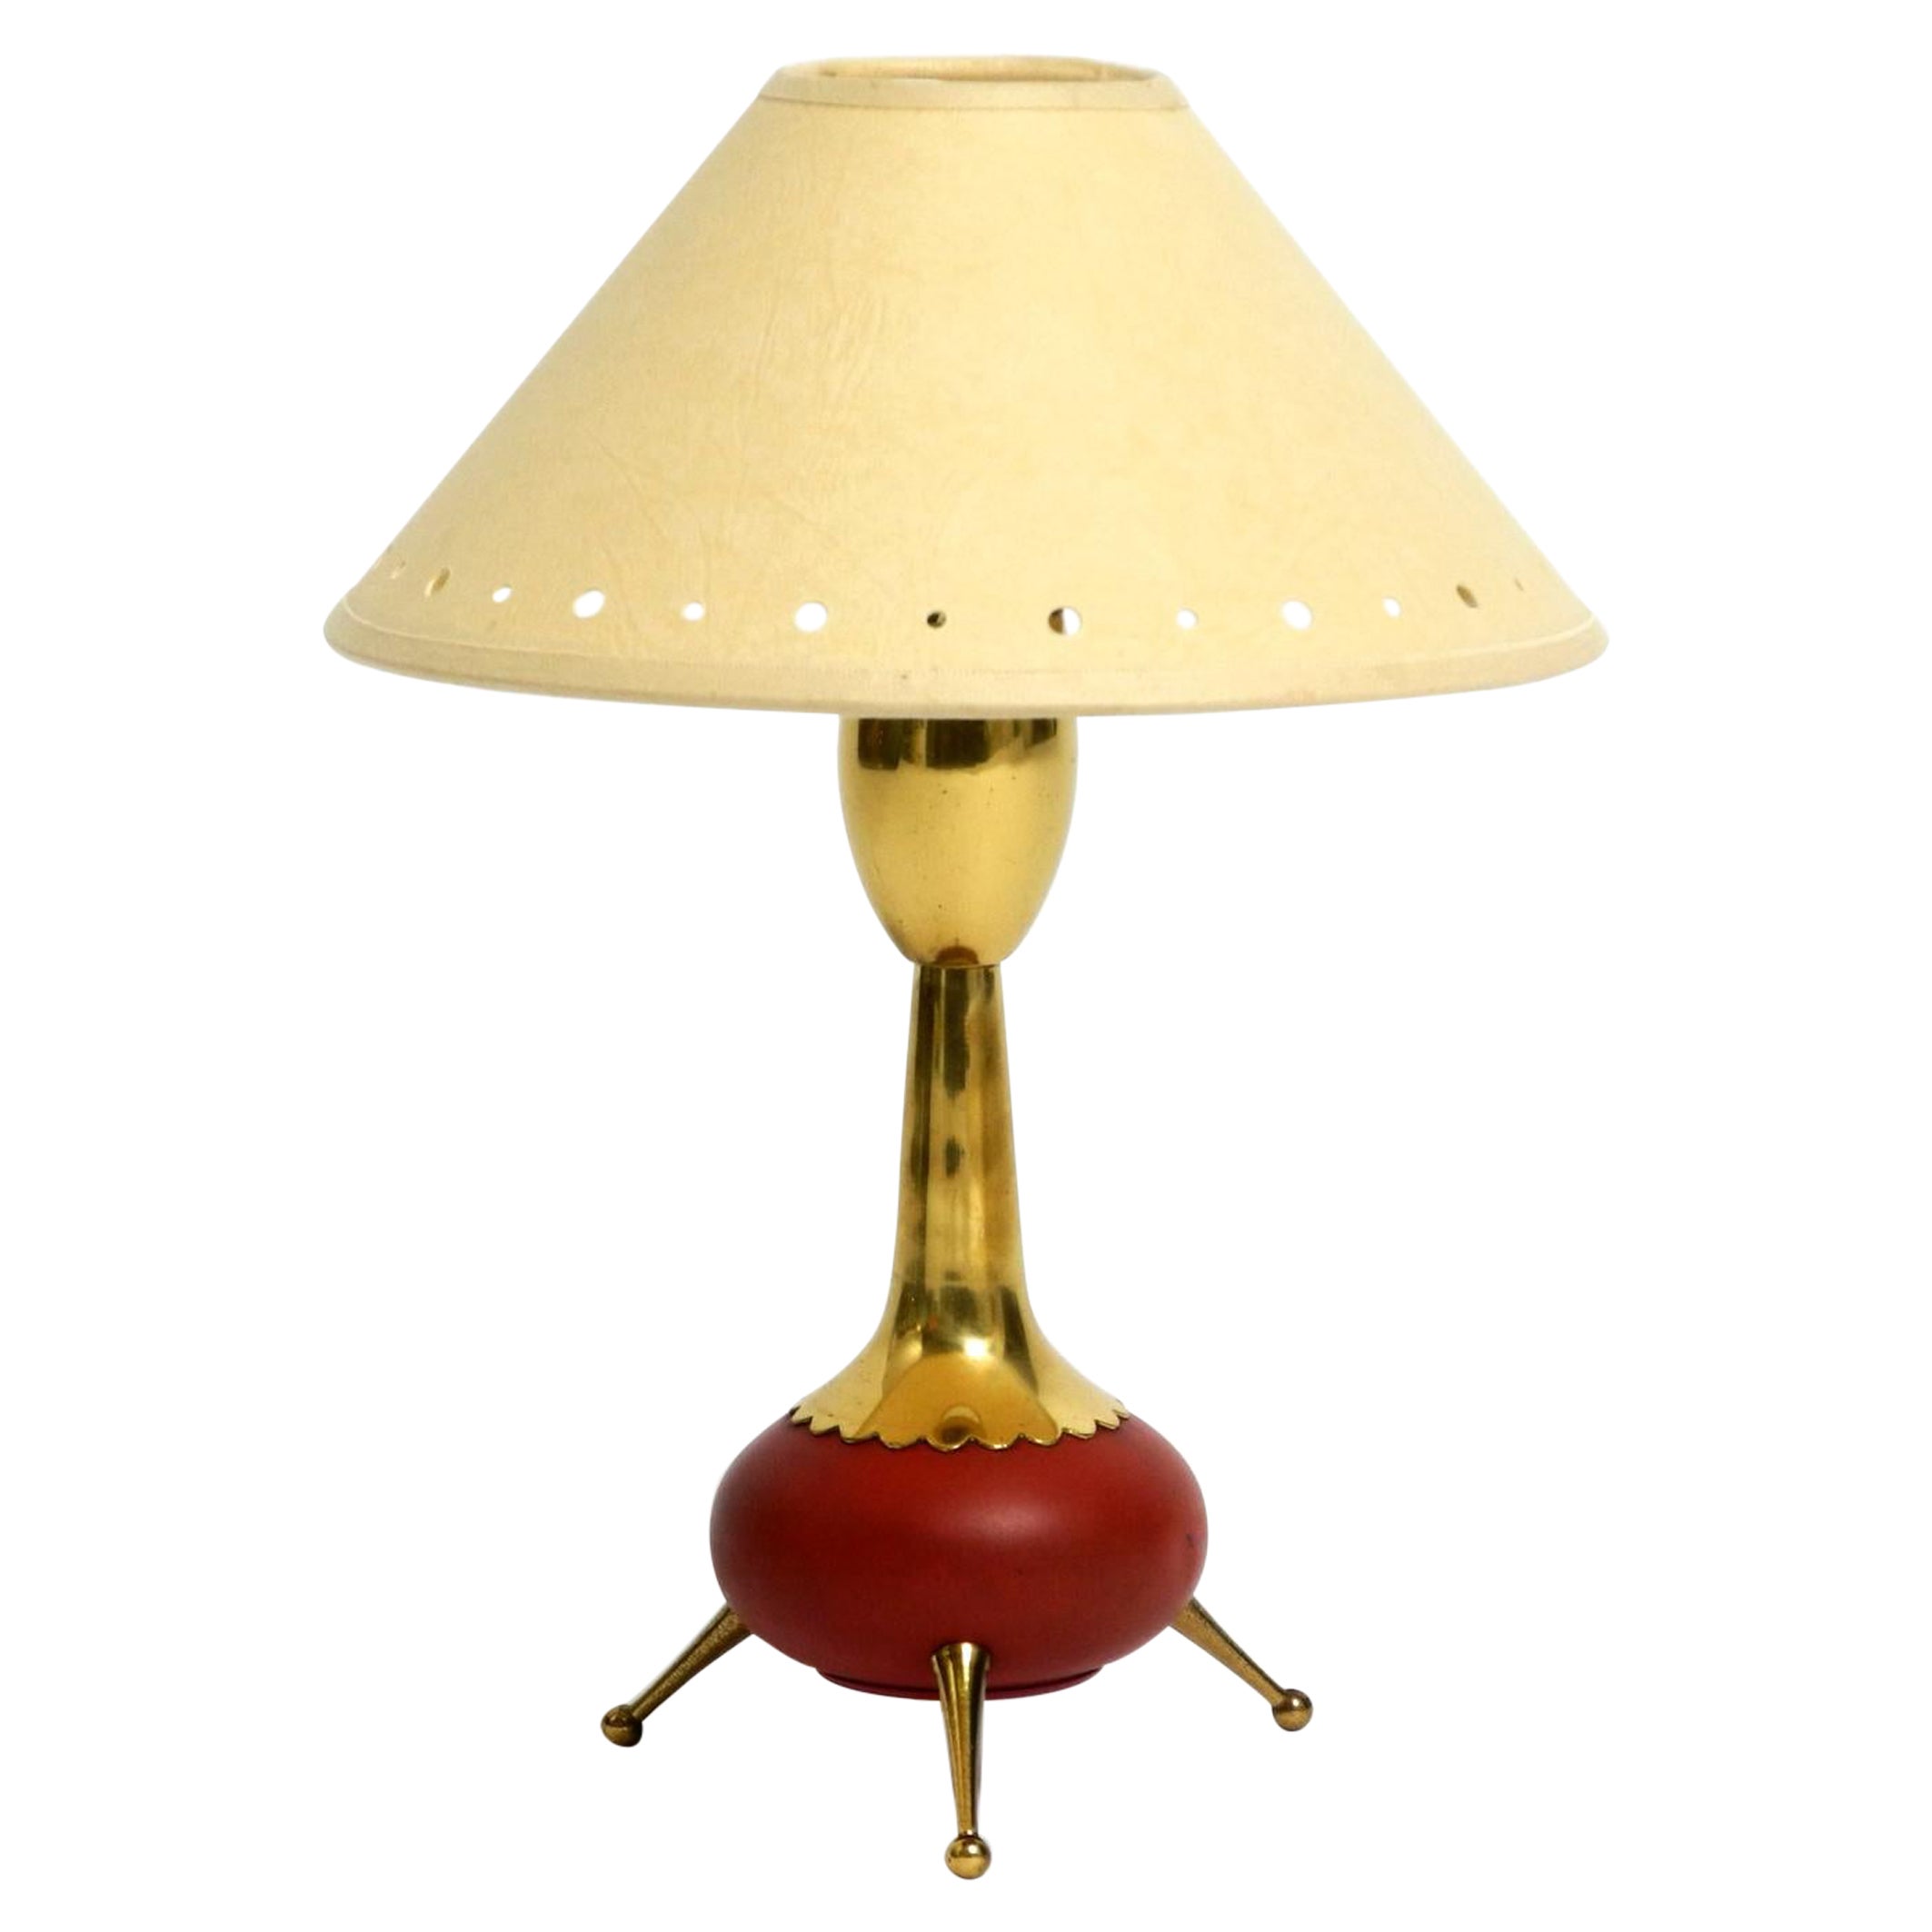 Magnifique lampe de table tripode en laiton d'origine, très rare, datant du milieu du siècle dernier.